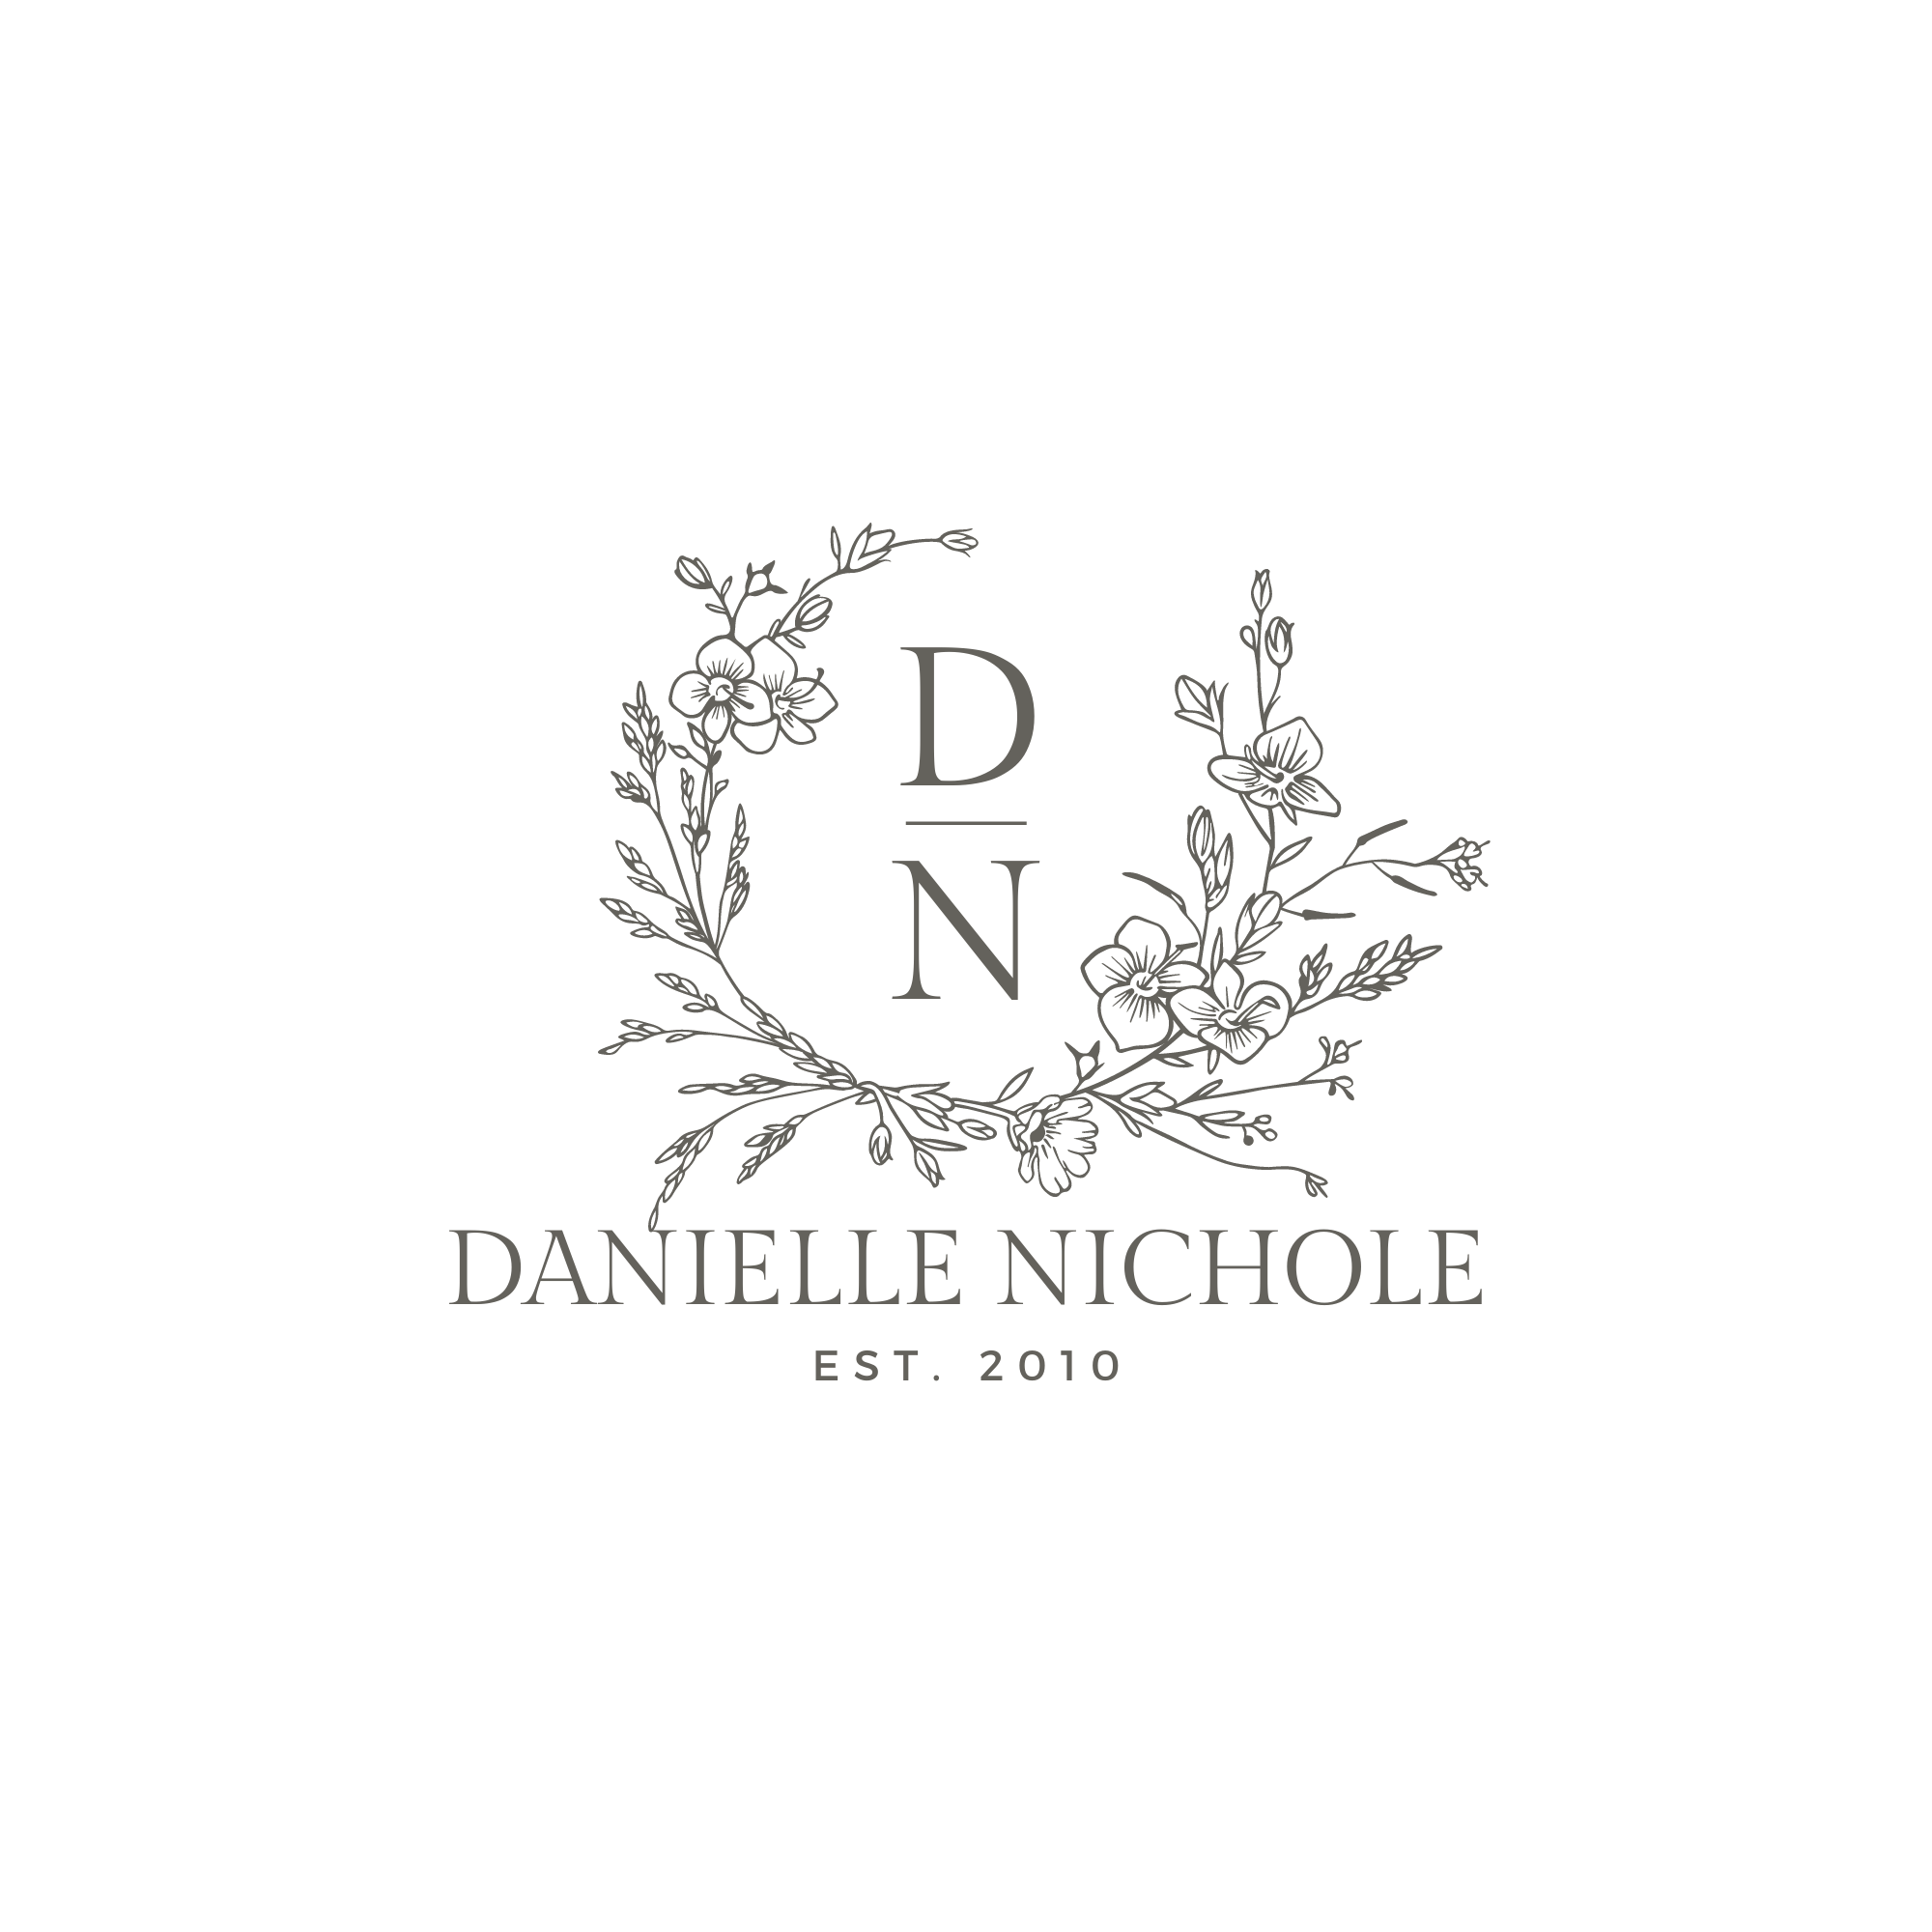 DANIELLE NICHOLE EVENTS 